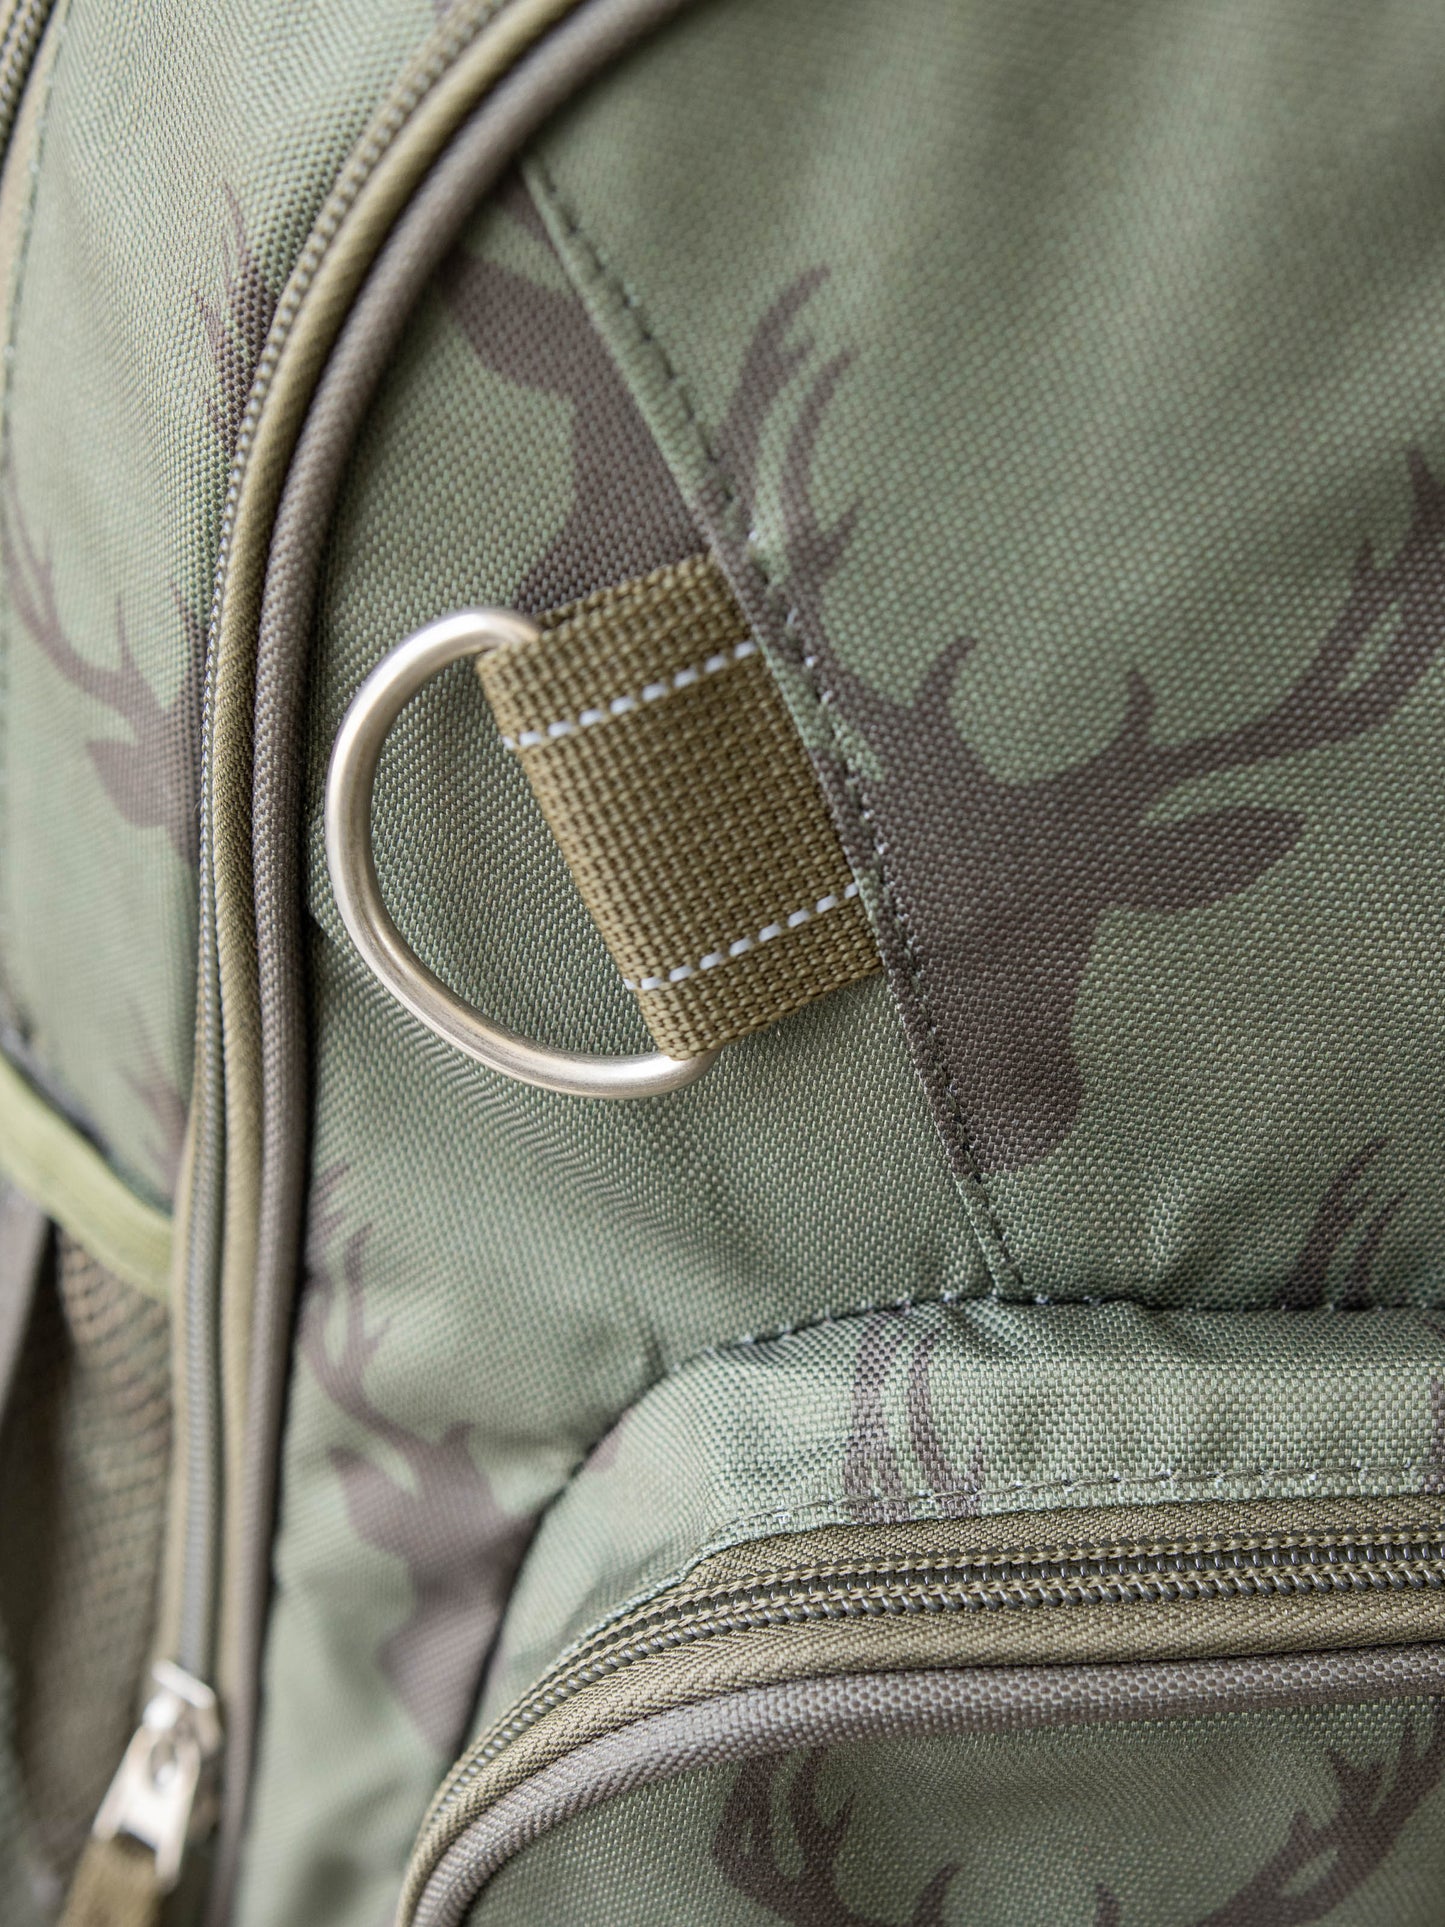 Rowen Backpack - Buck